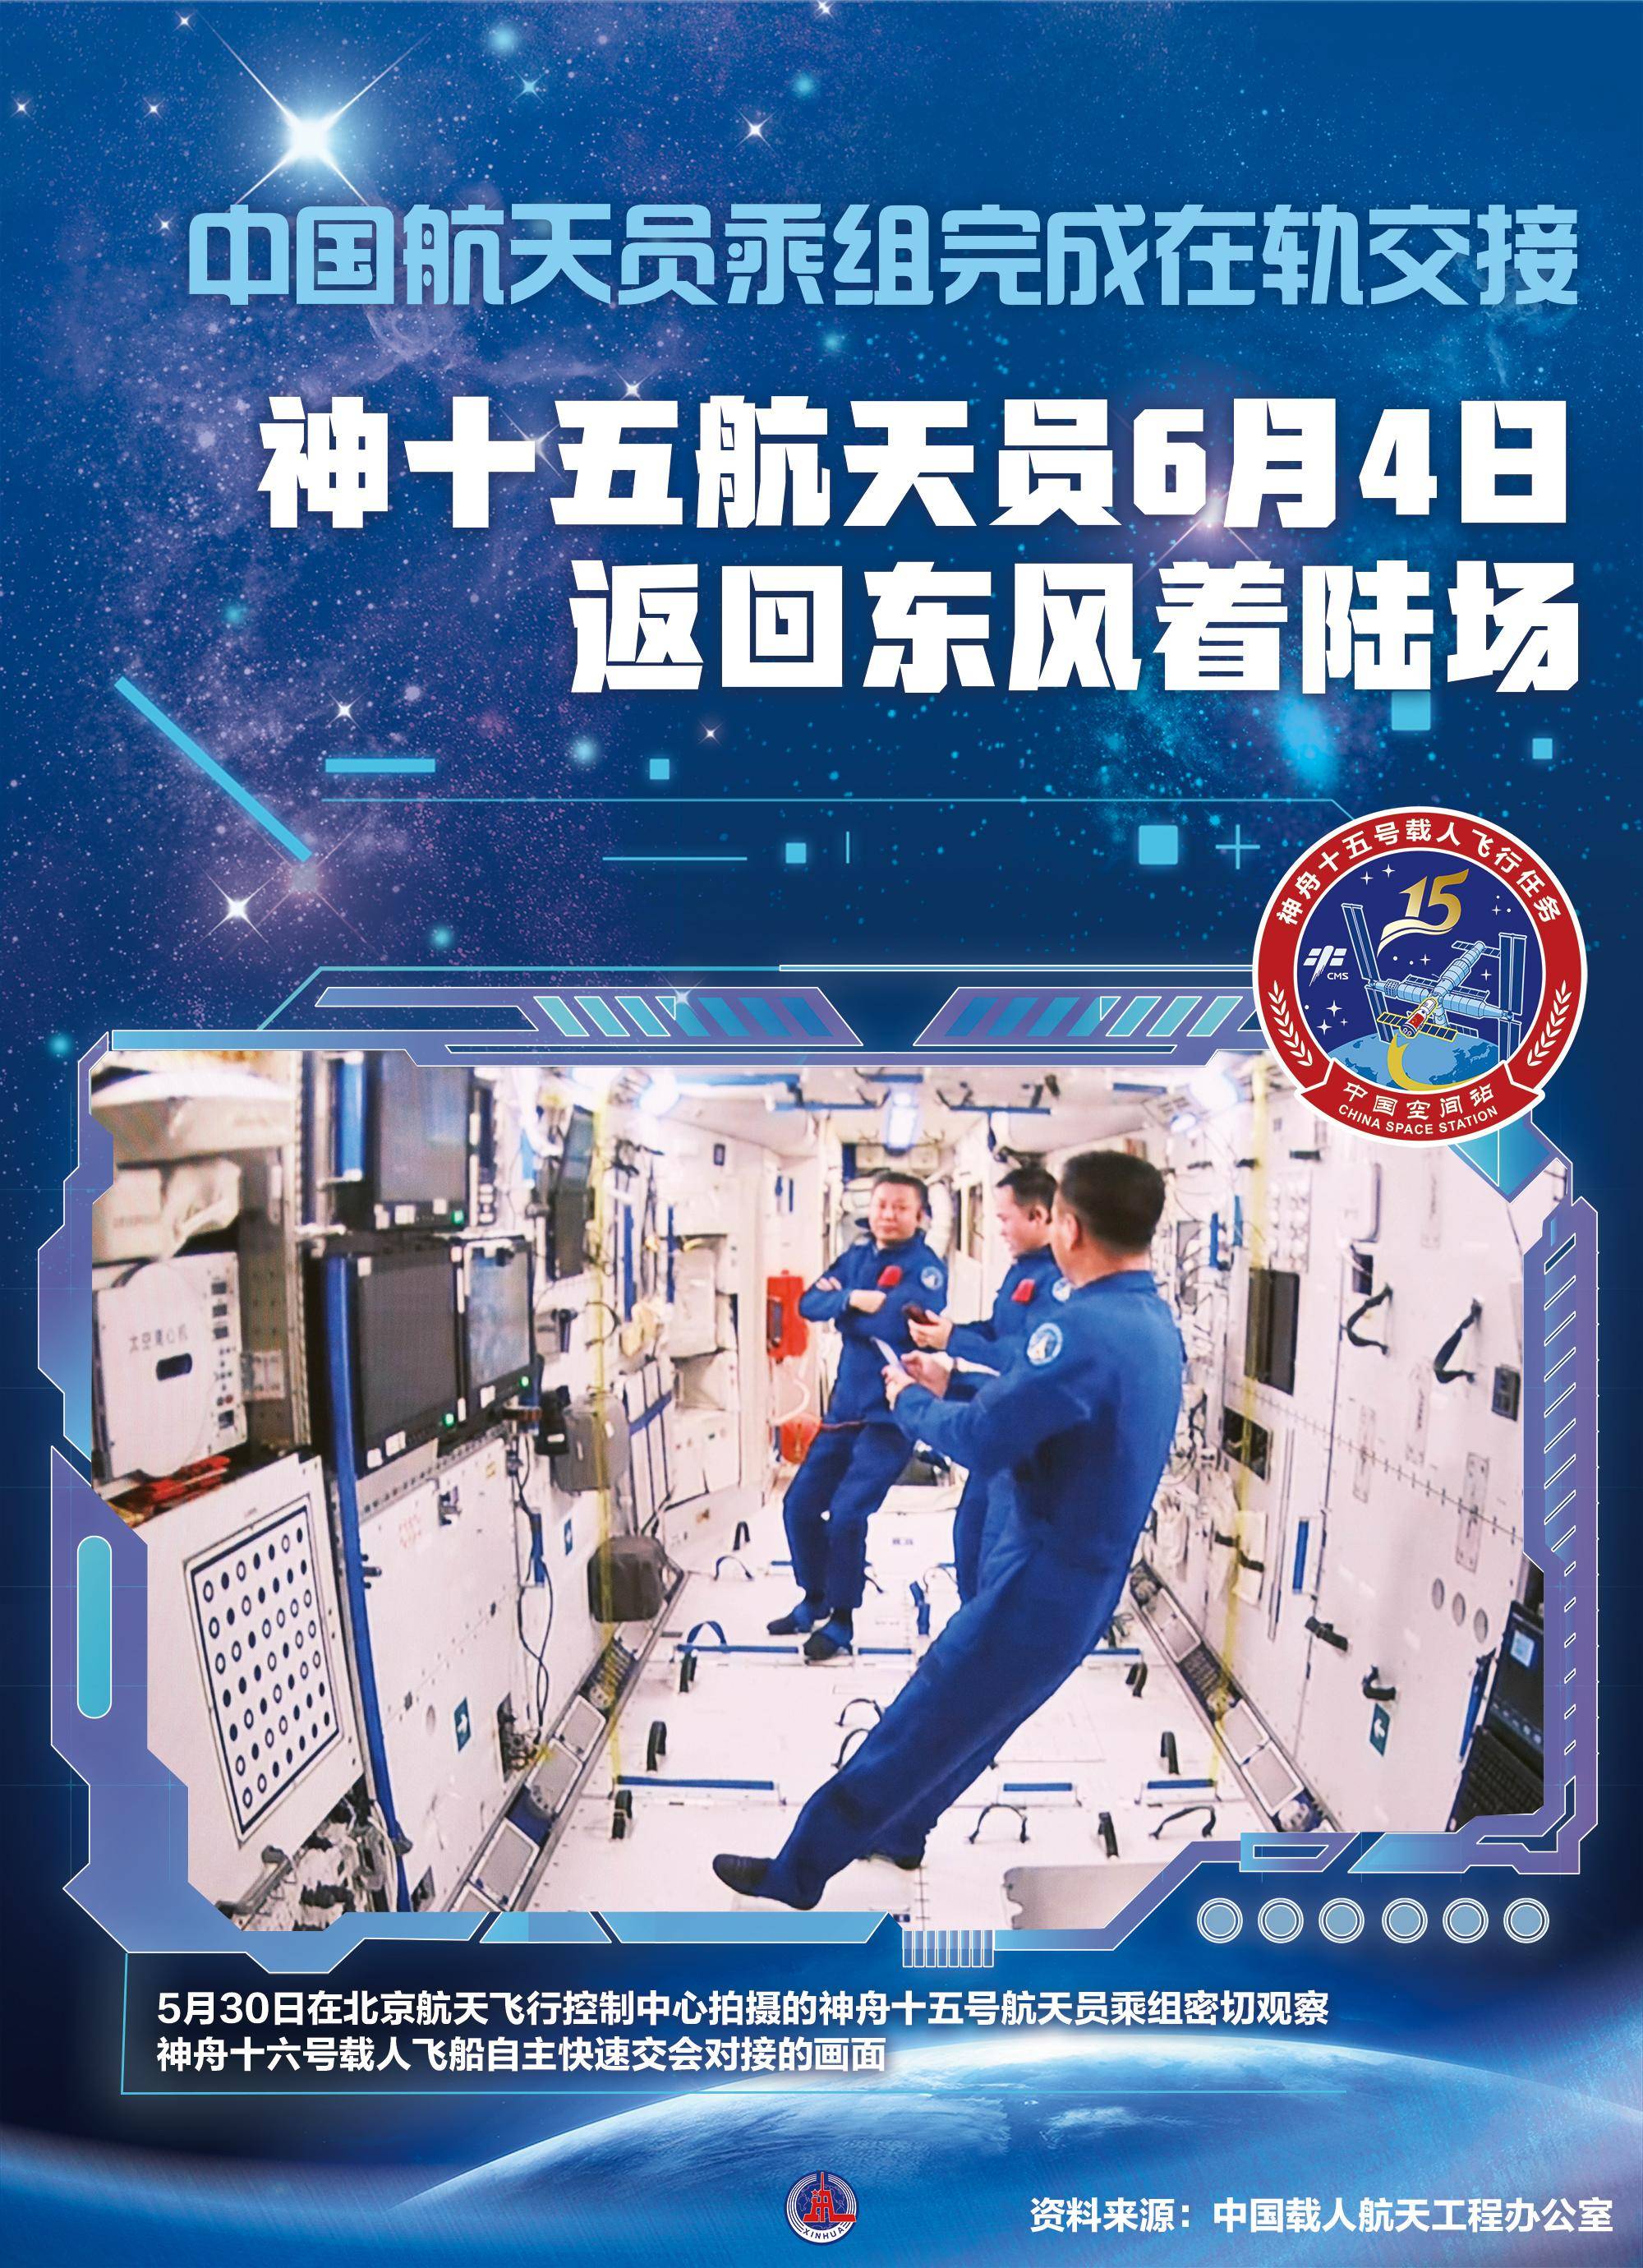 中国太空人完成首次在轨交接 神舟十四号3人周日返地球 - 国际 - 即时国际